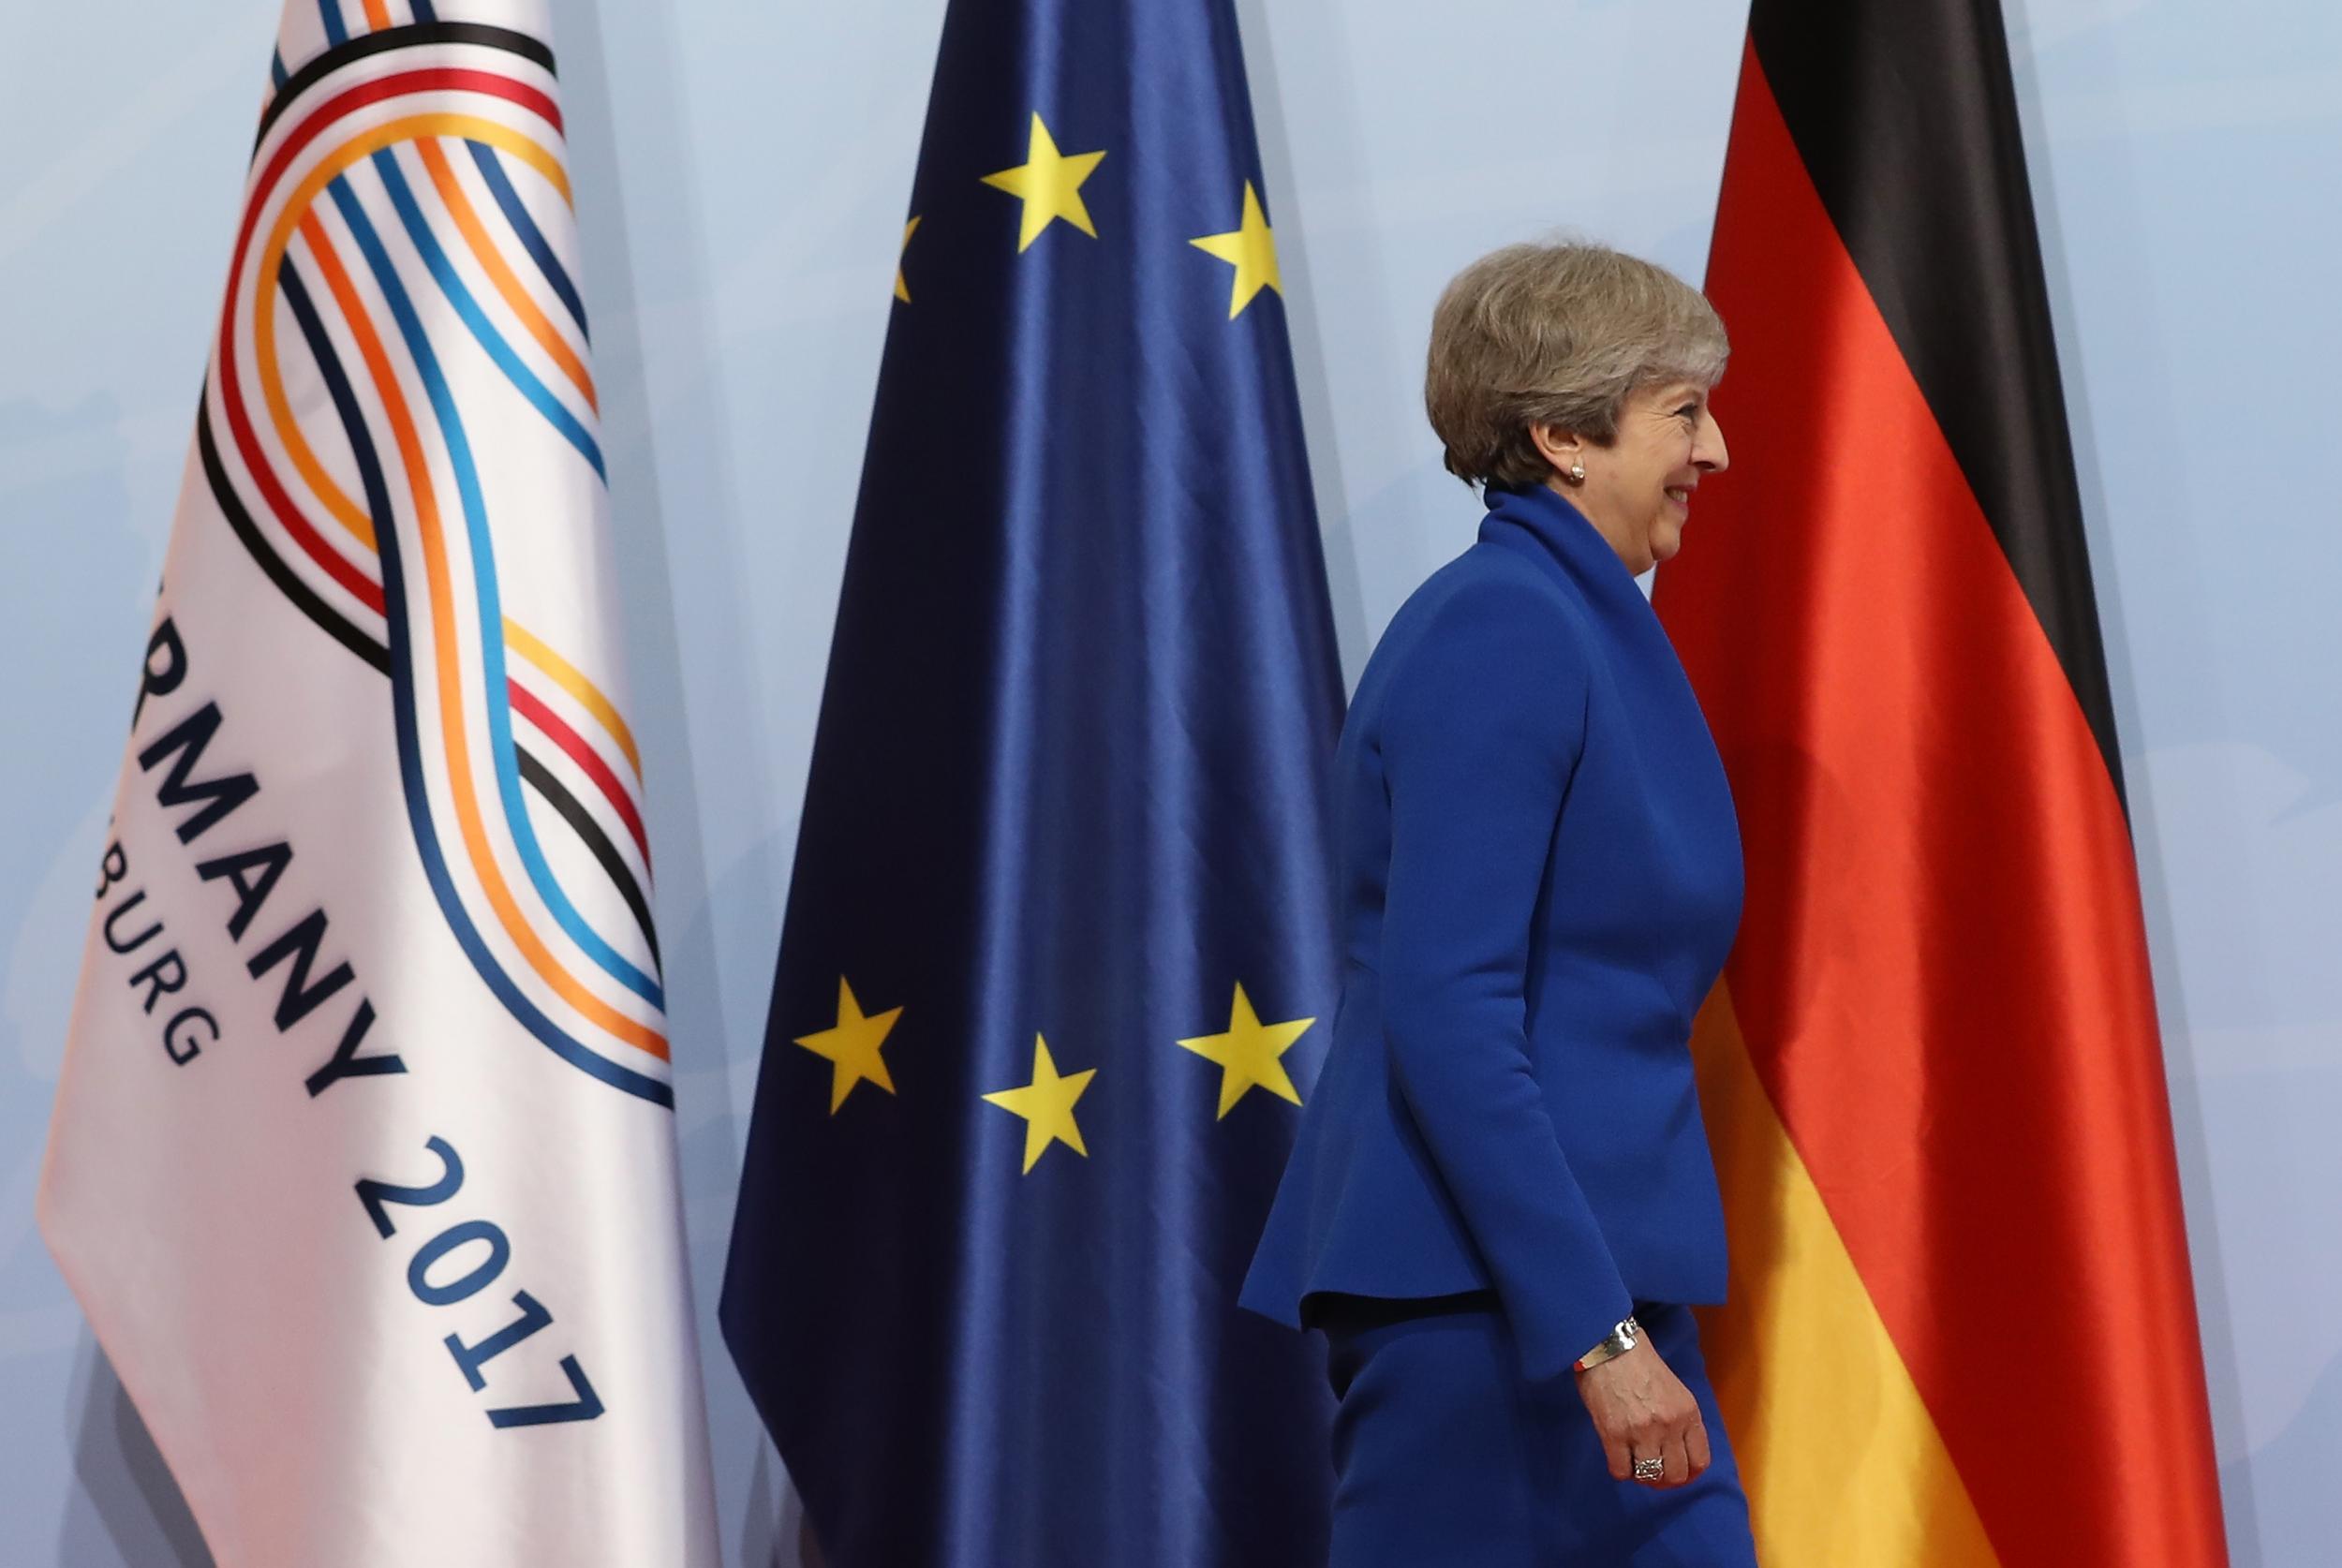 Theresa May arrives at the G20 summit in Hamburg